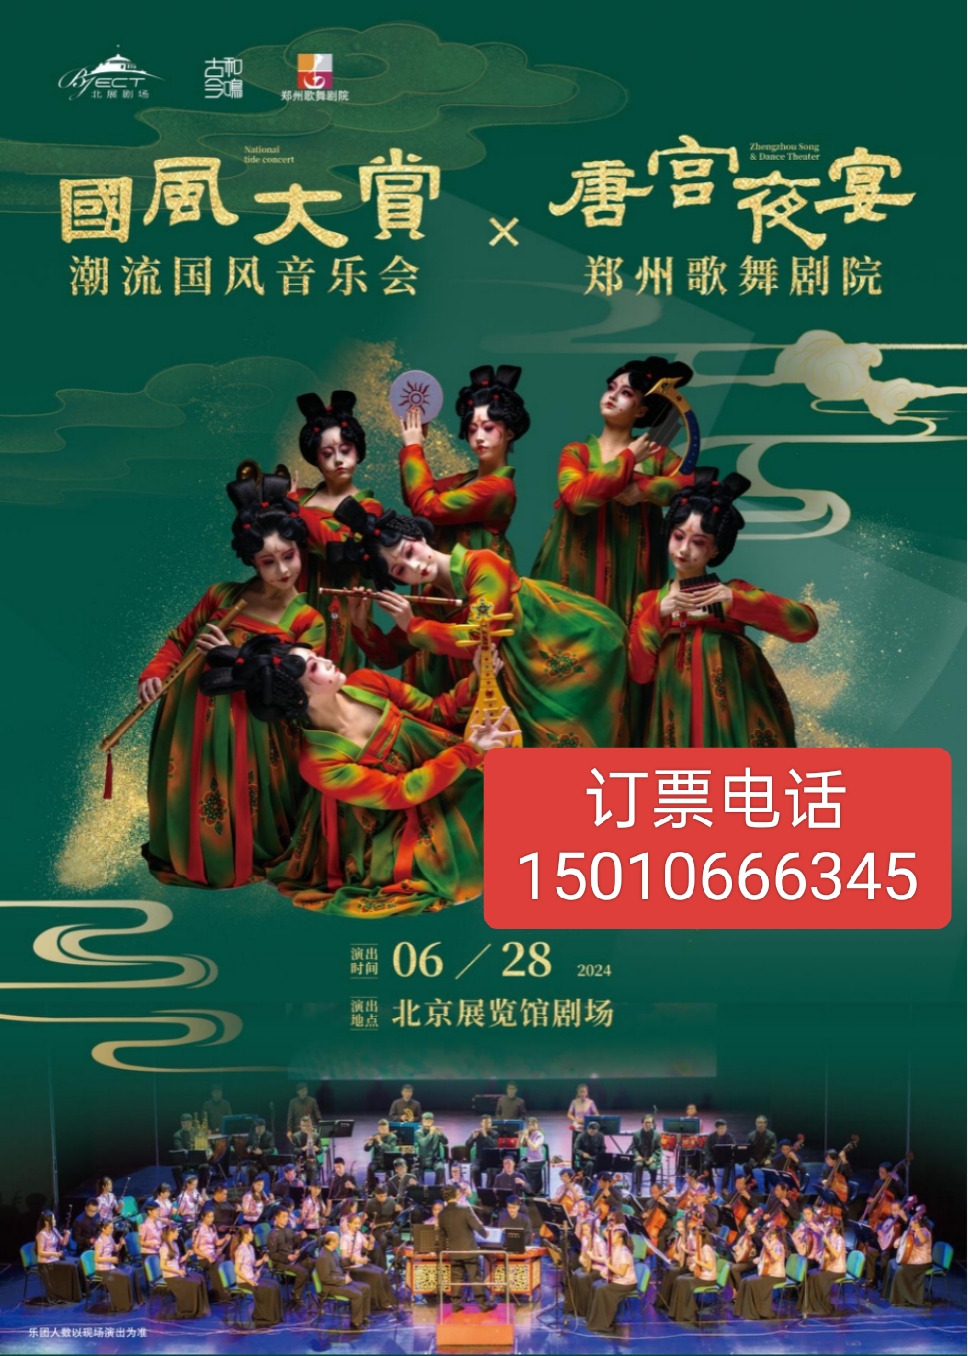 北京展览馆剧场国风大赏大型国潮音乐会郑州歌舞剧院唐宫夜宴